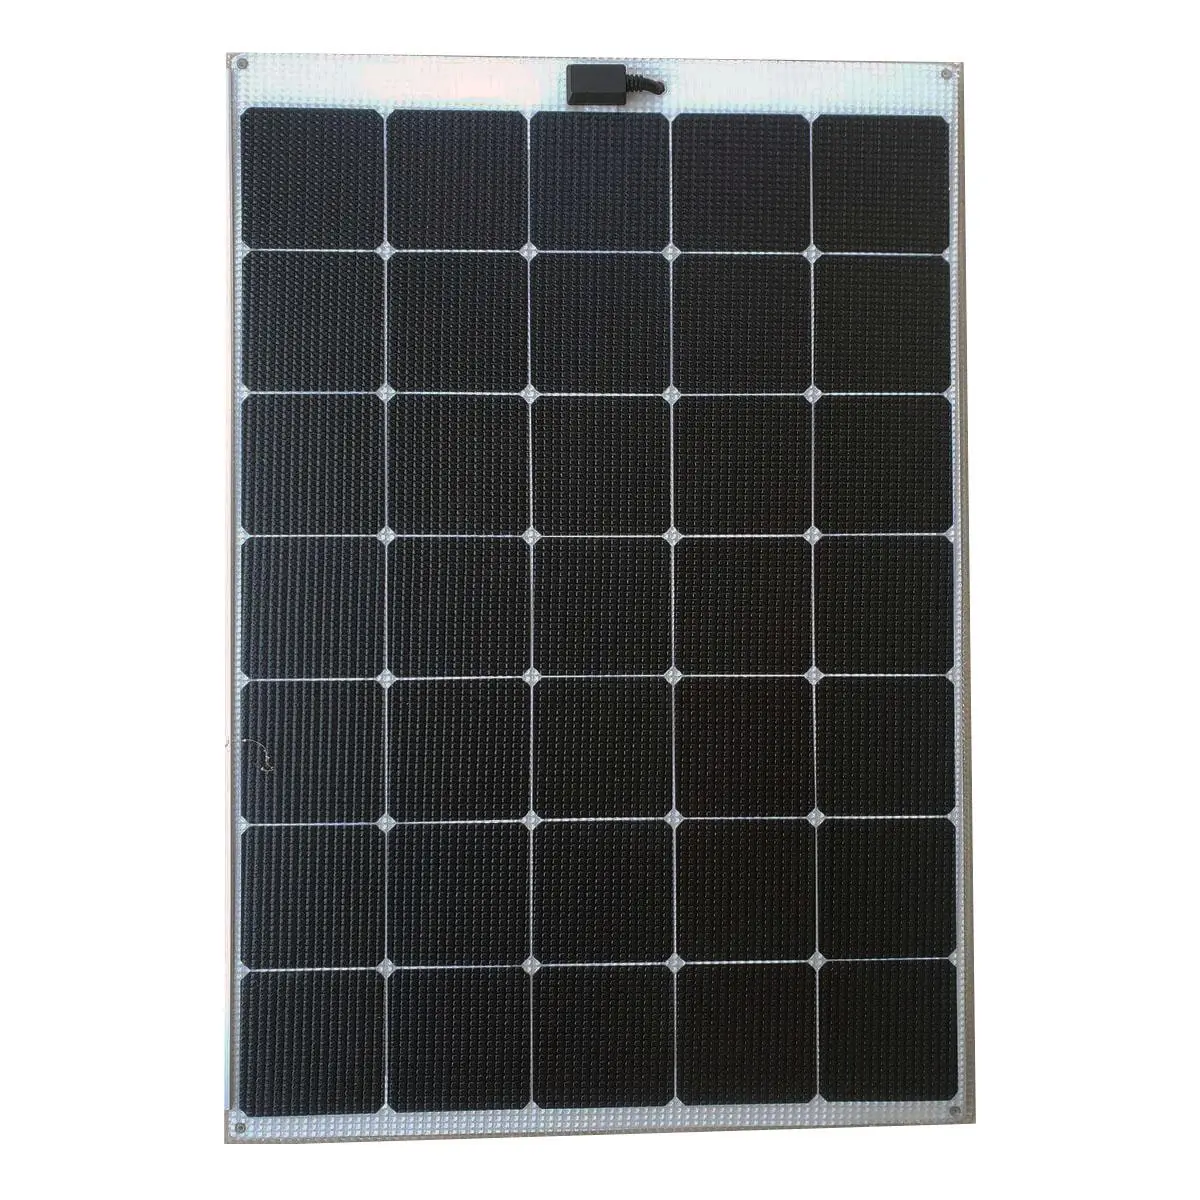 150 watt solar panels - What size is a 150 watt solar panel